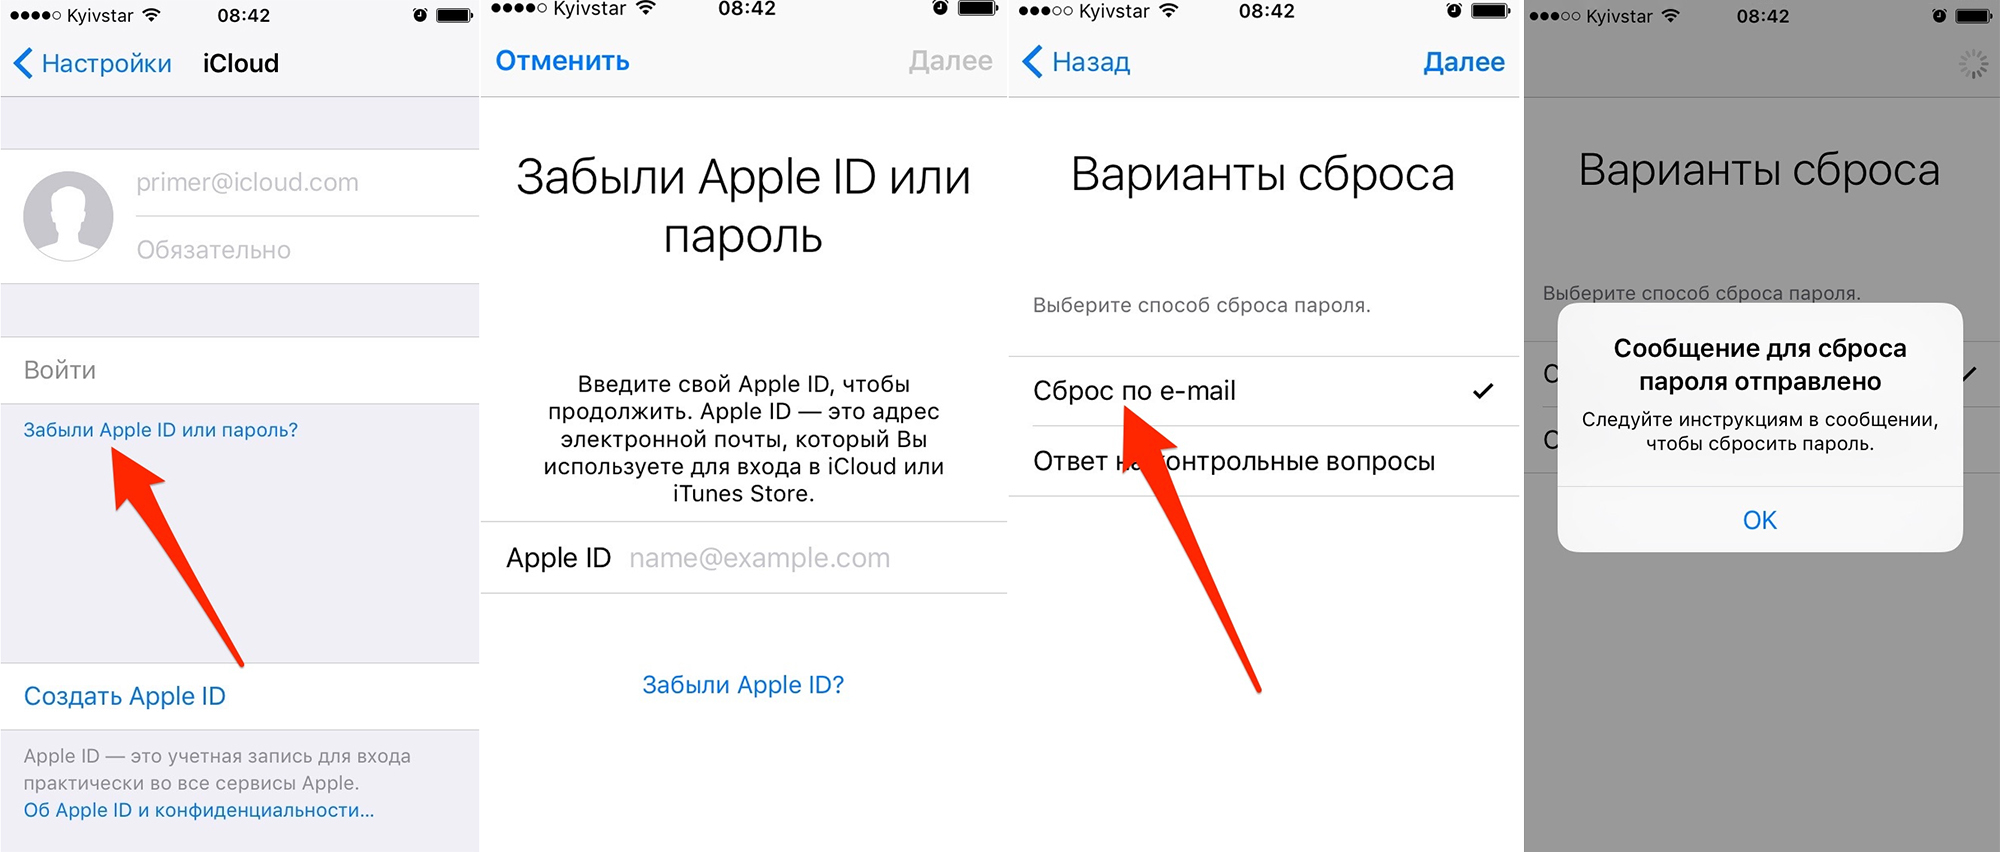 Сбросить айфон без пароля apple id. Пароль от Apple ID. Забыл Apple ID. Забыл пароль от ICLOUD. Пароль Apple ID на айфоне если забыл.